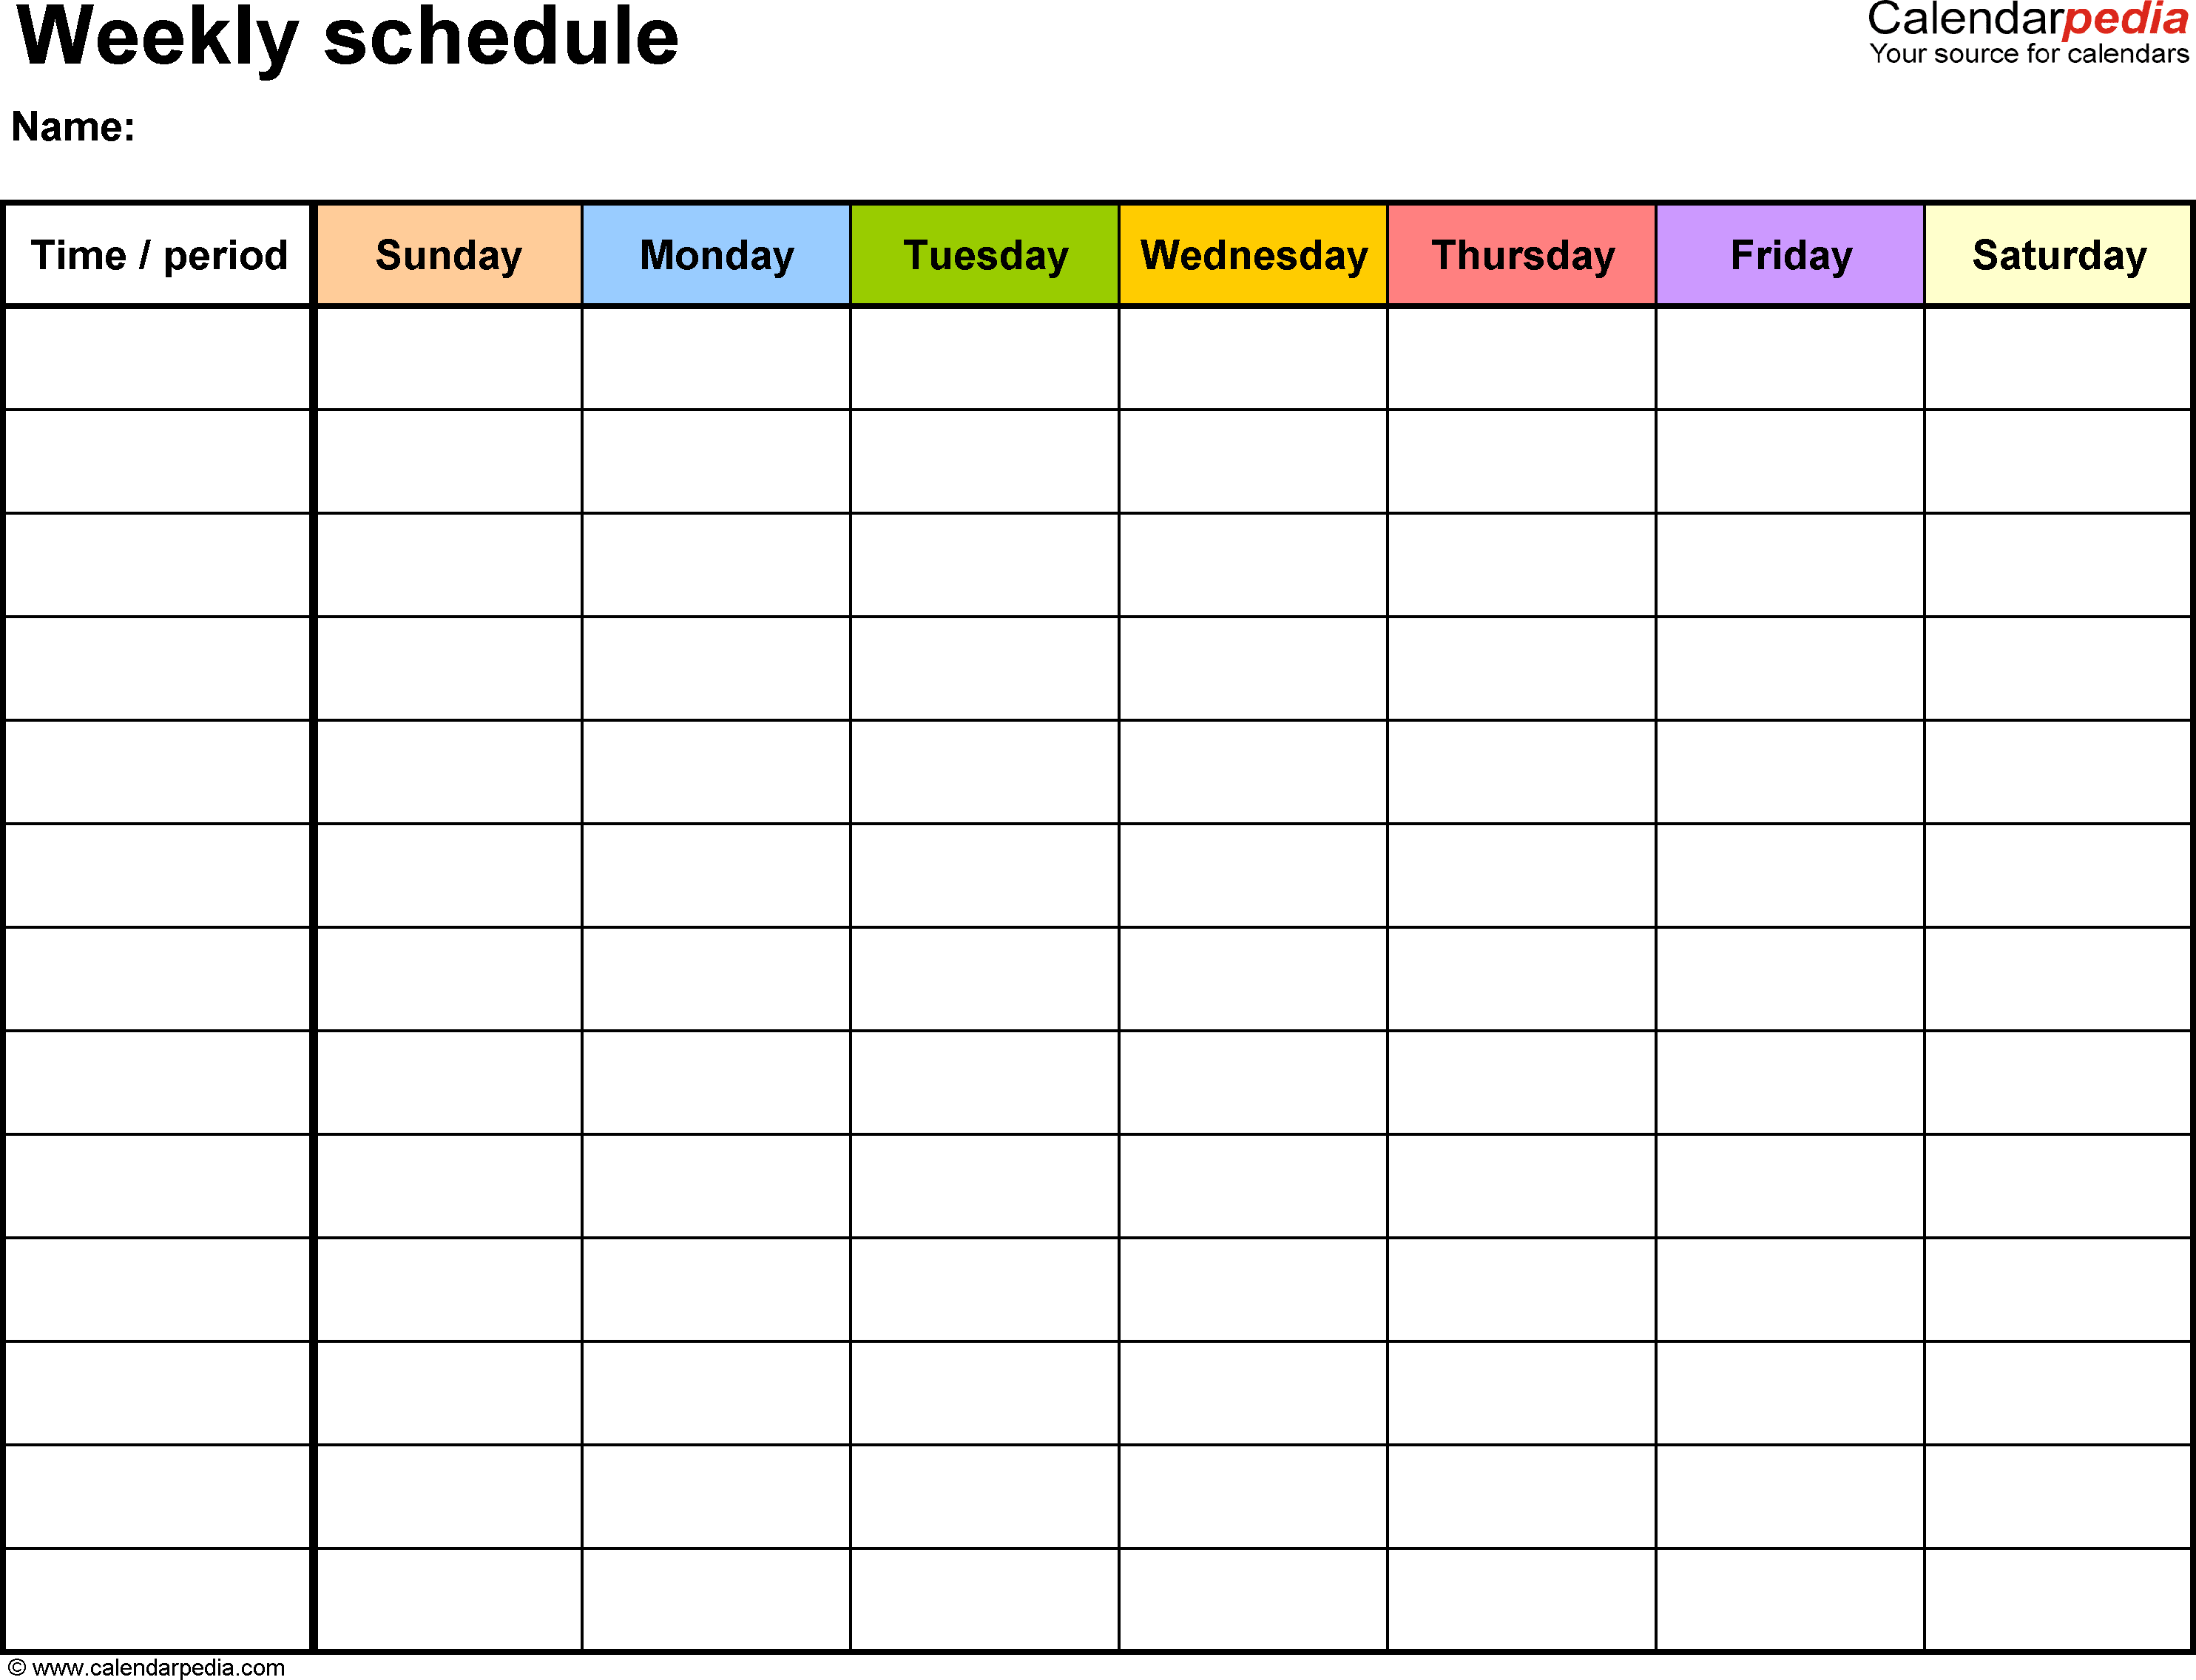 Printable Weekly Work Schedule Template